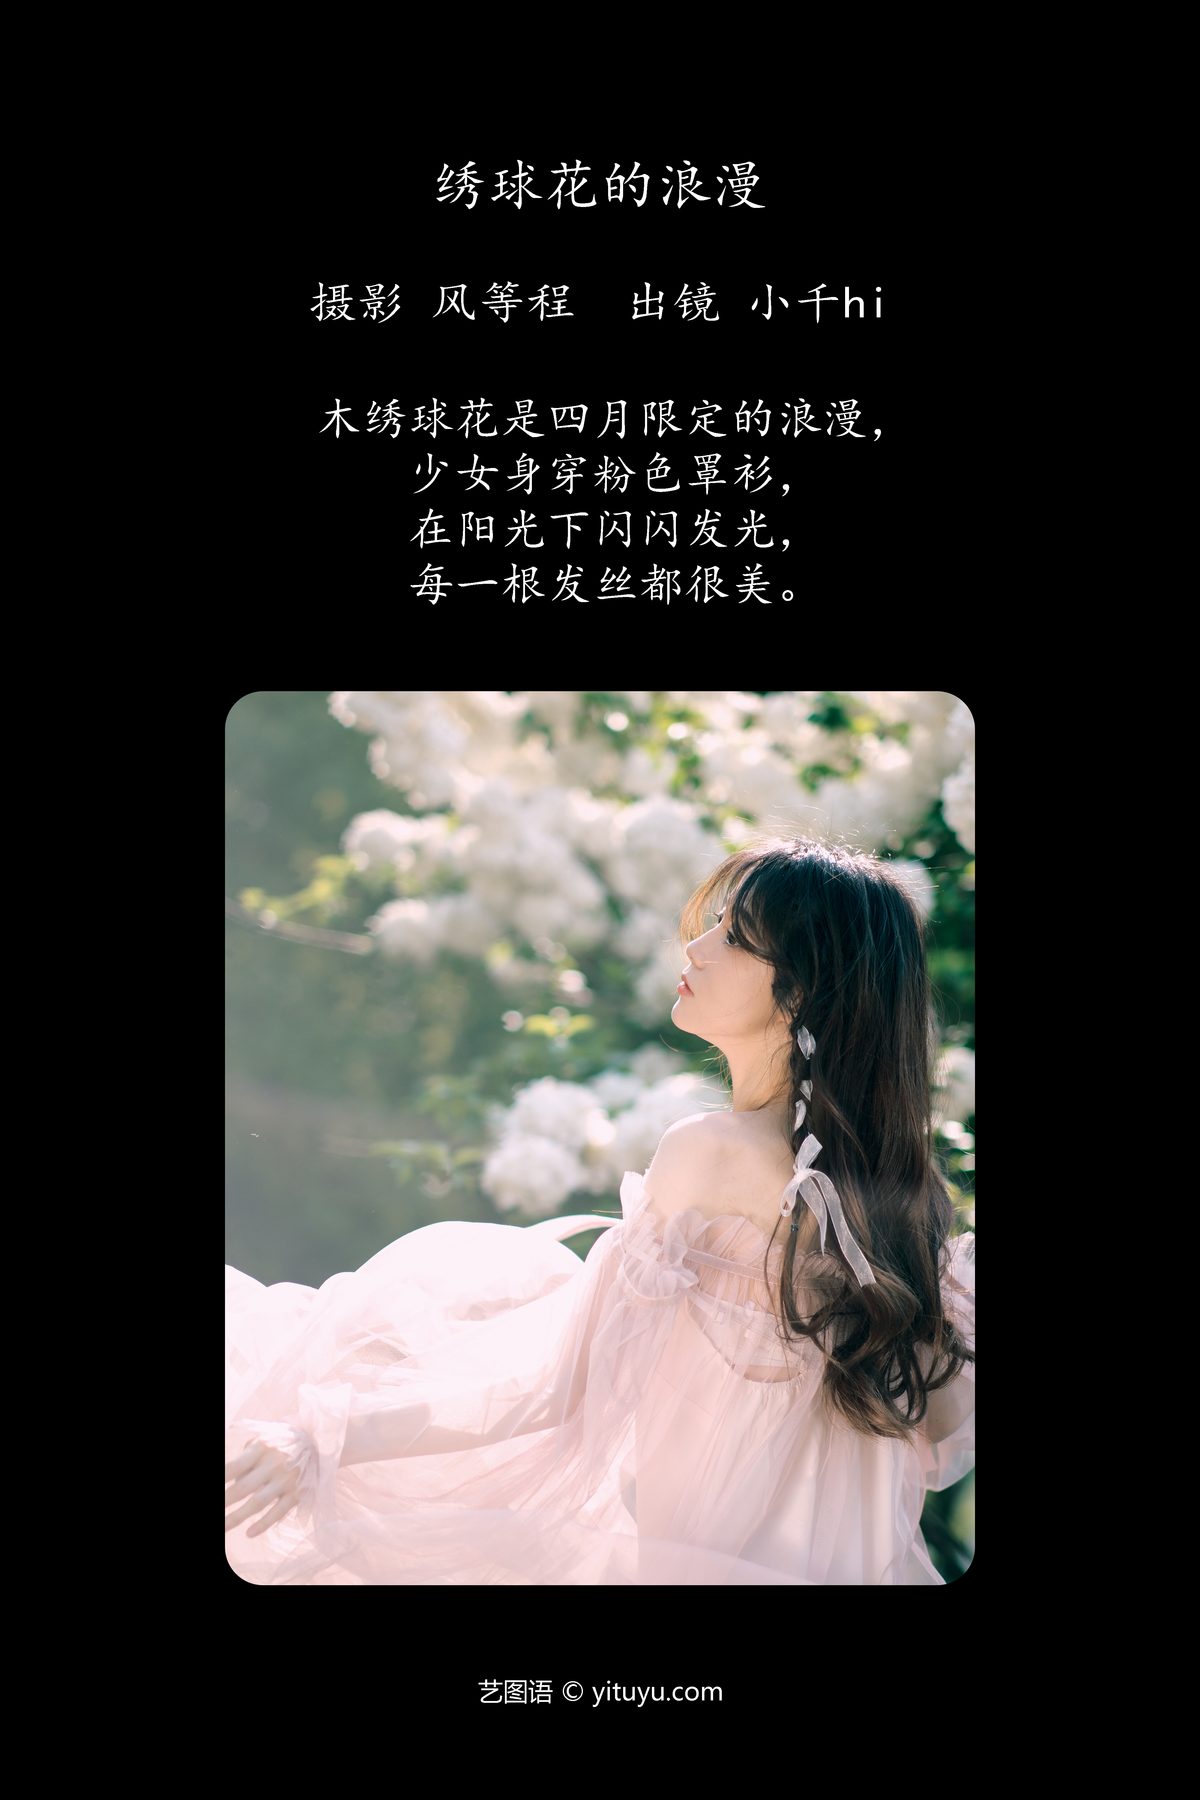 YiTuYu艺图语 Vol 4837 Xiao Qian Hi 0002 5282504330.jpg